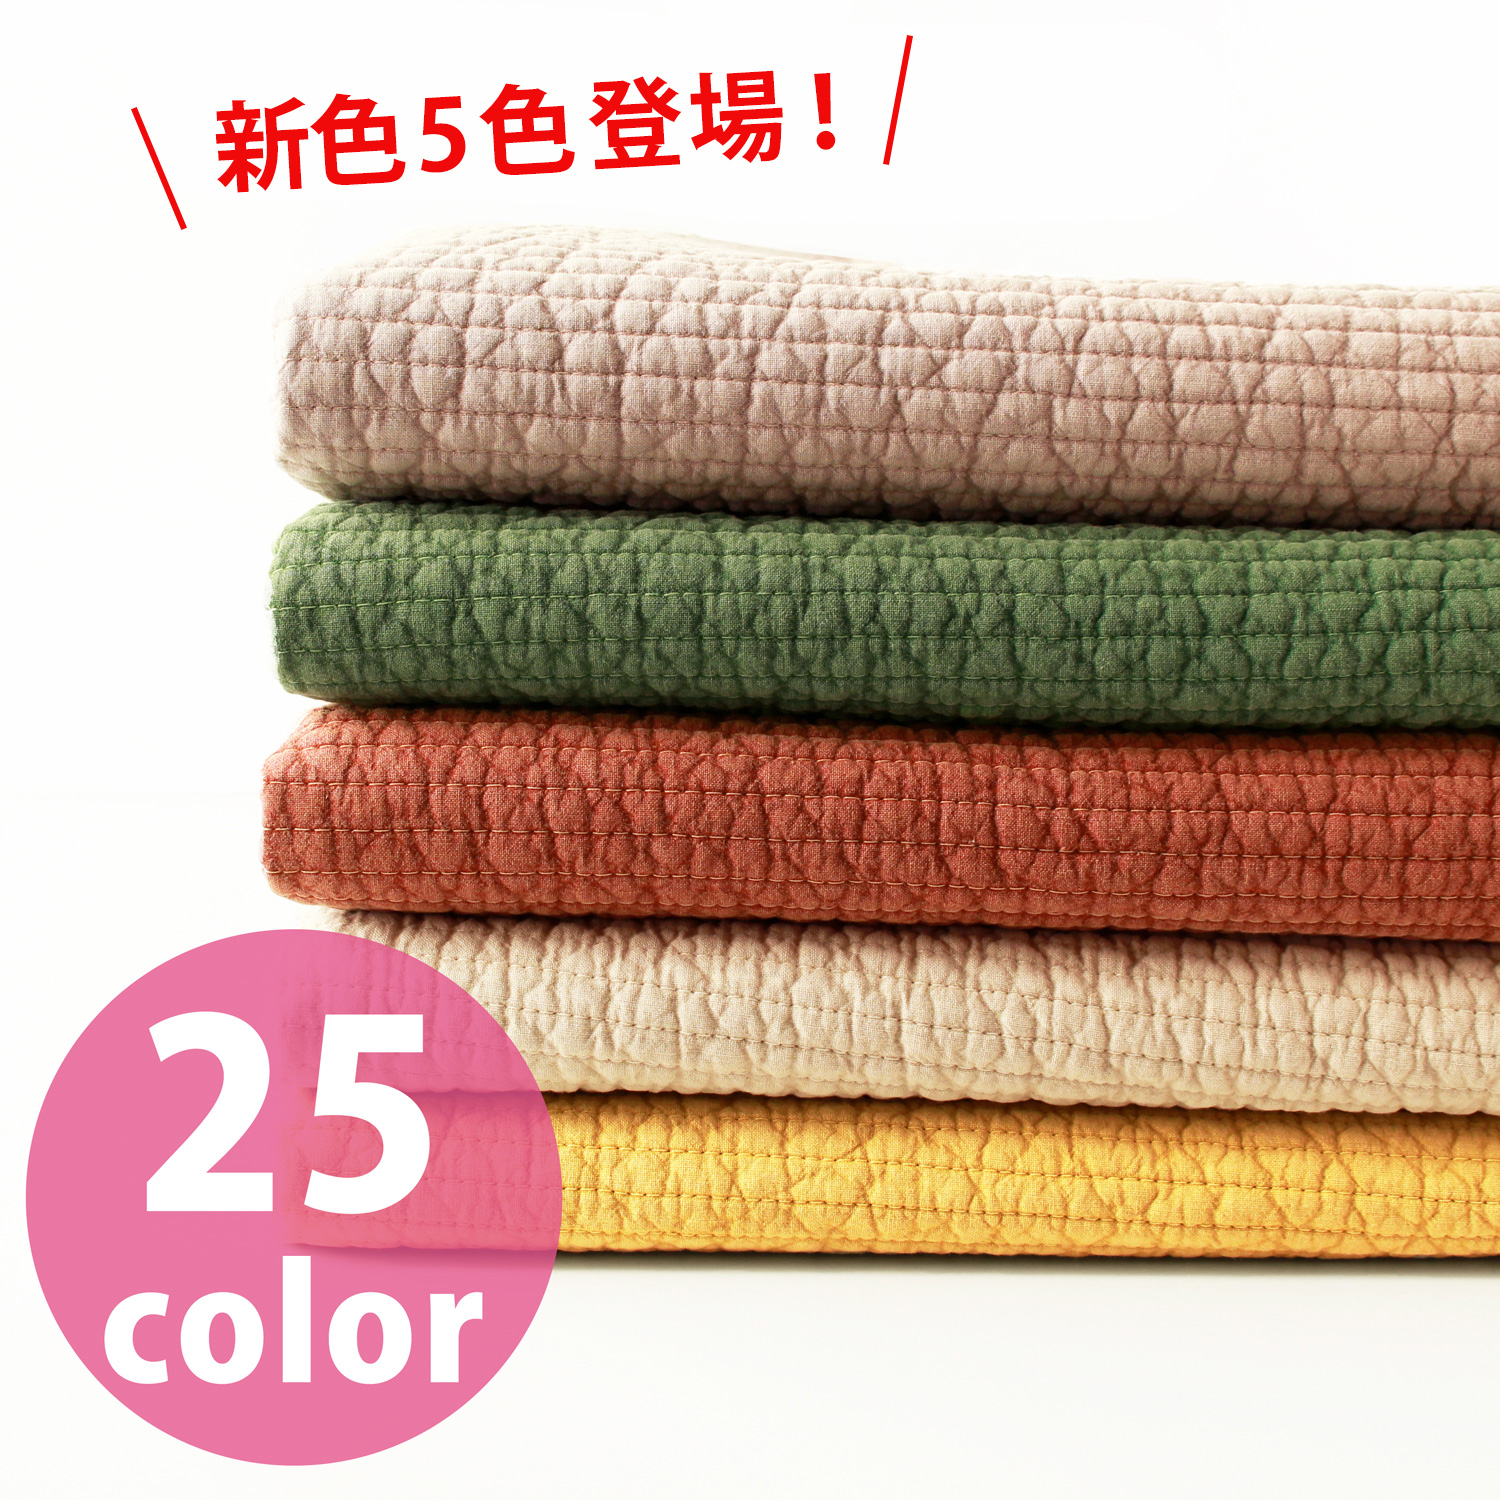 ■NBY307R nubi ヌビ 韓国伝統キルティング生地 巾7mmサイズ 約8m巻 (巻)